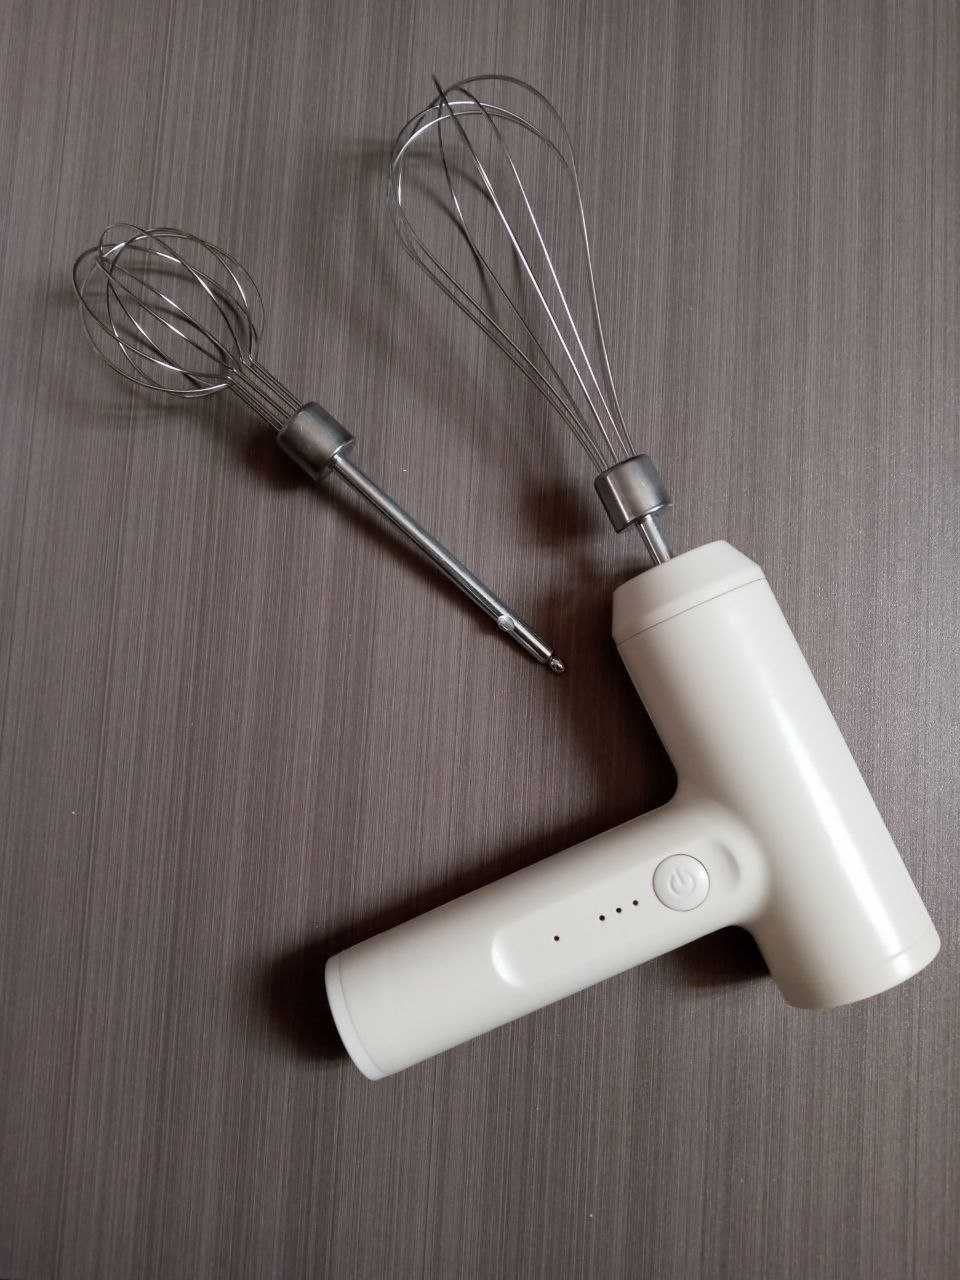 Елегантний і потужний: Компактний електро міксер для вашої кухні